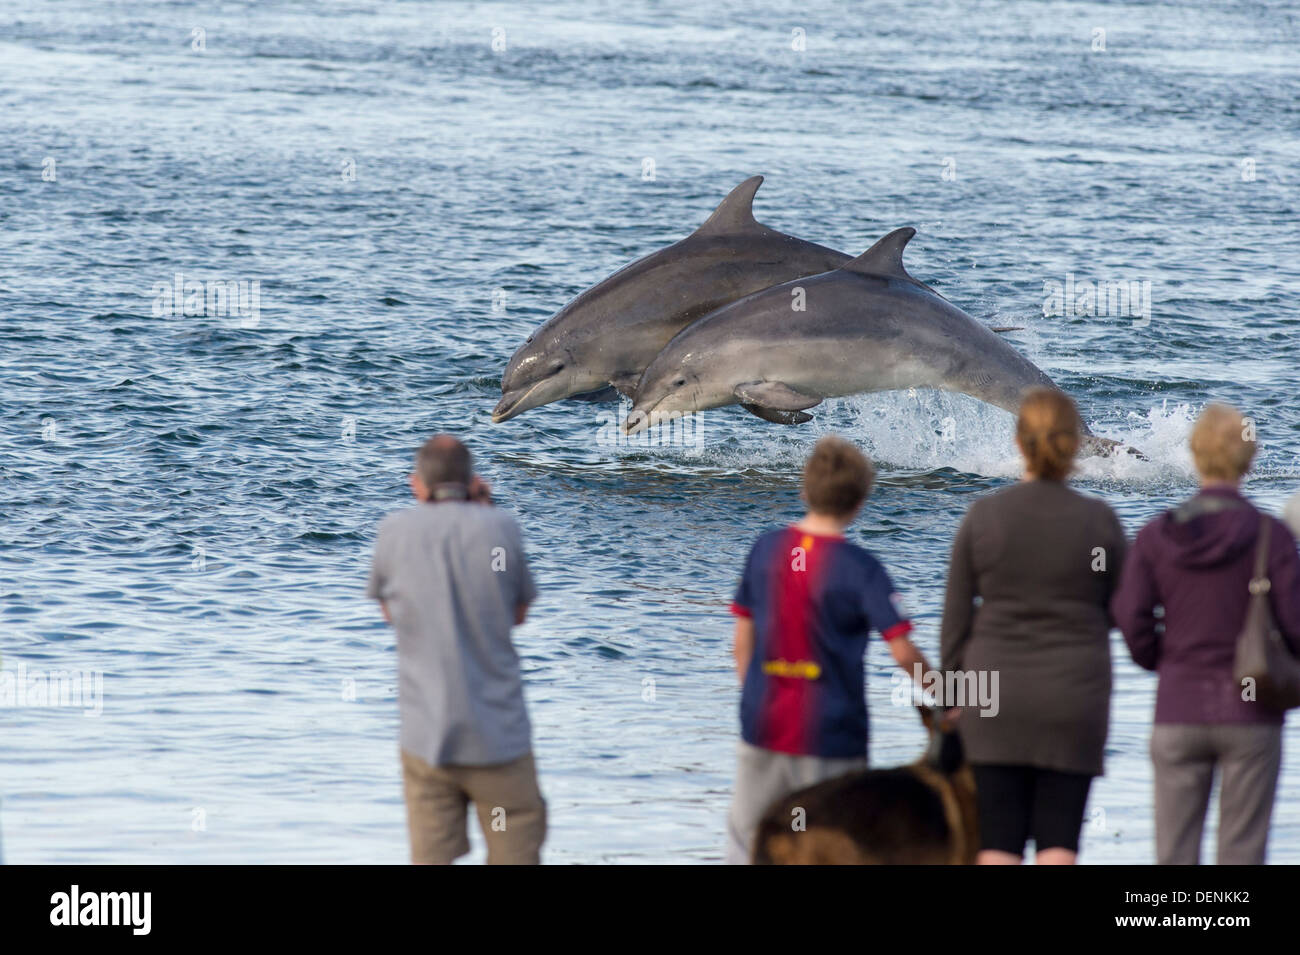 Comune dal naso a bottiglia dolphin (Tursiops truncatus) - punto Chanonry, Scotland, Regno Unito Foto Stock